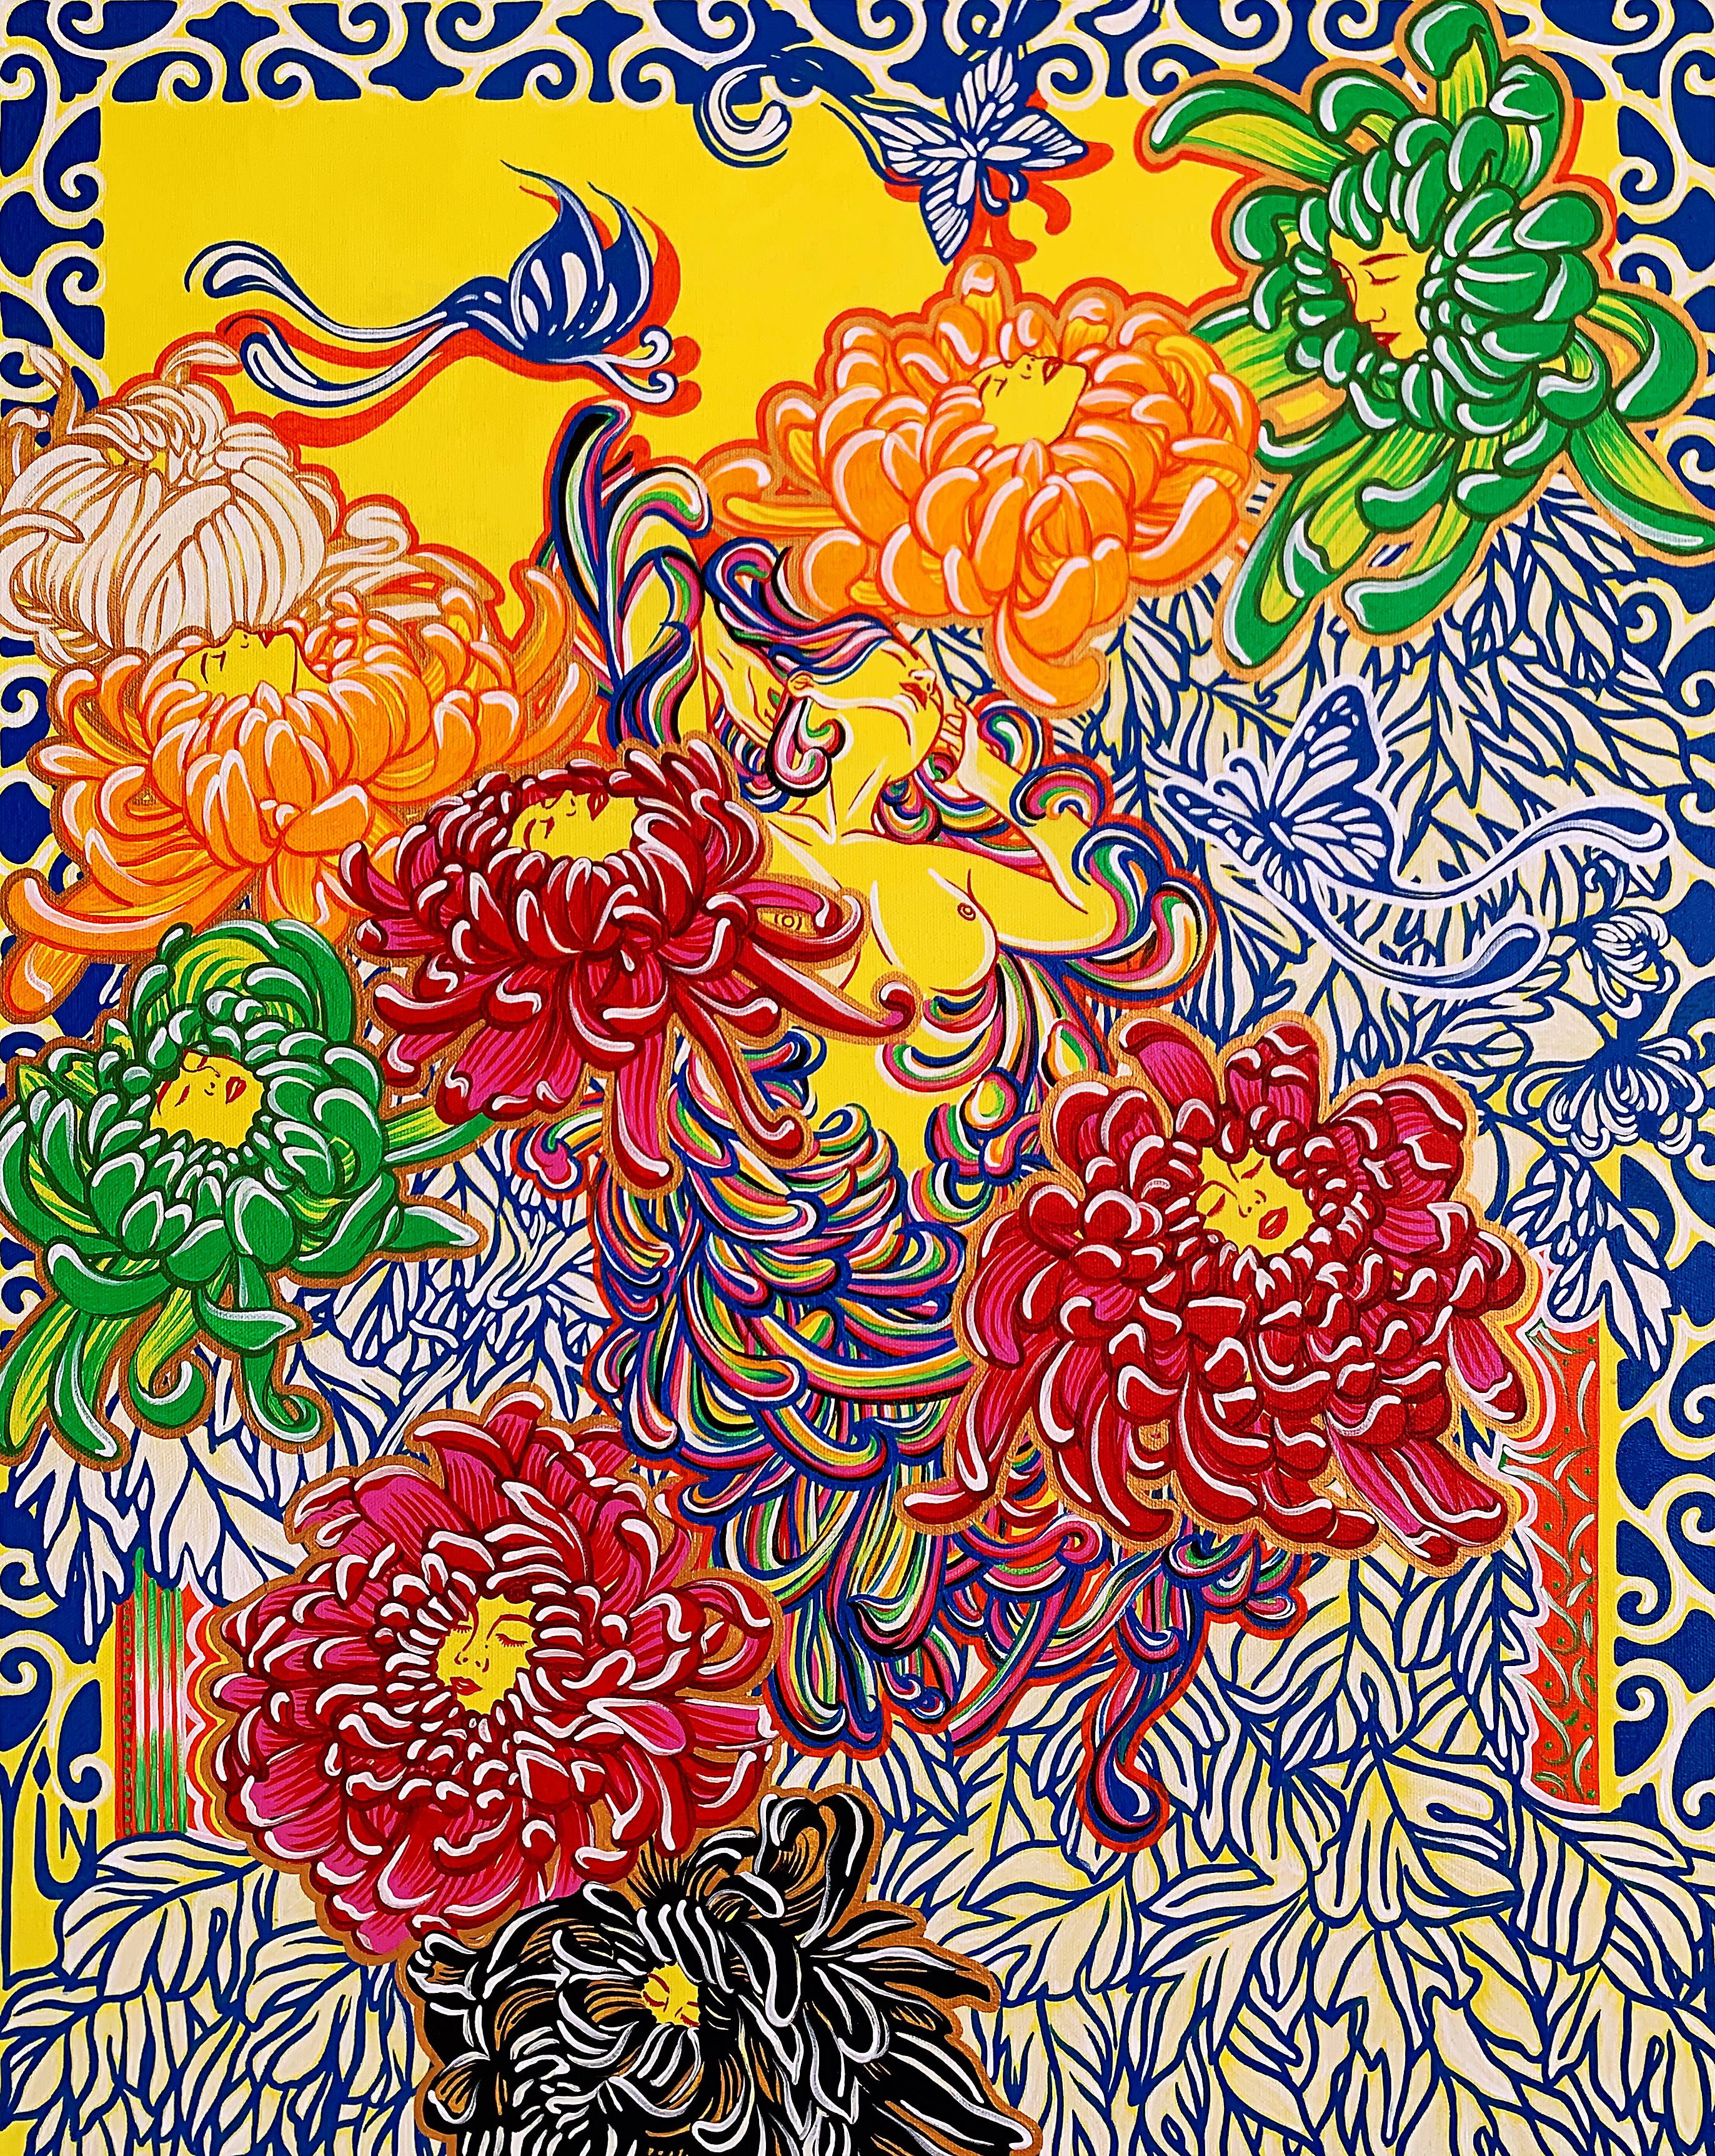 三八国际妇女节中澳女书画家书画作品云展——春天的故事(图15)